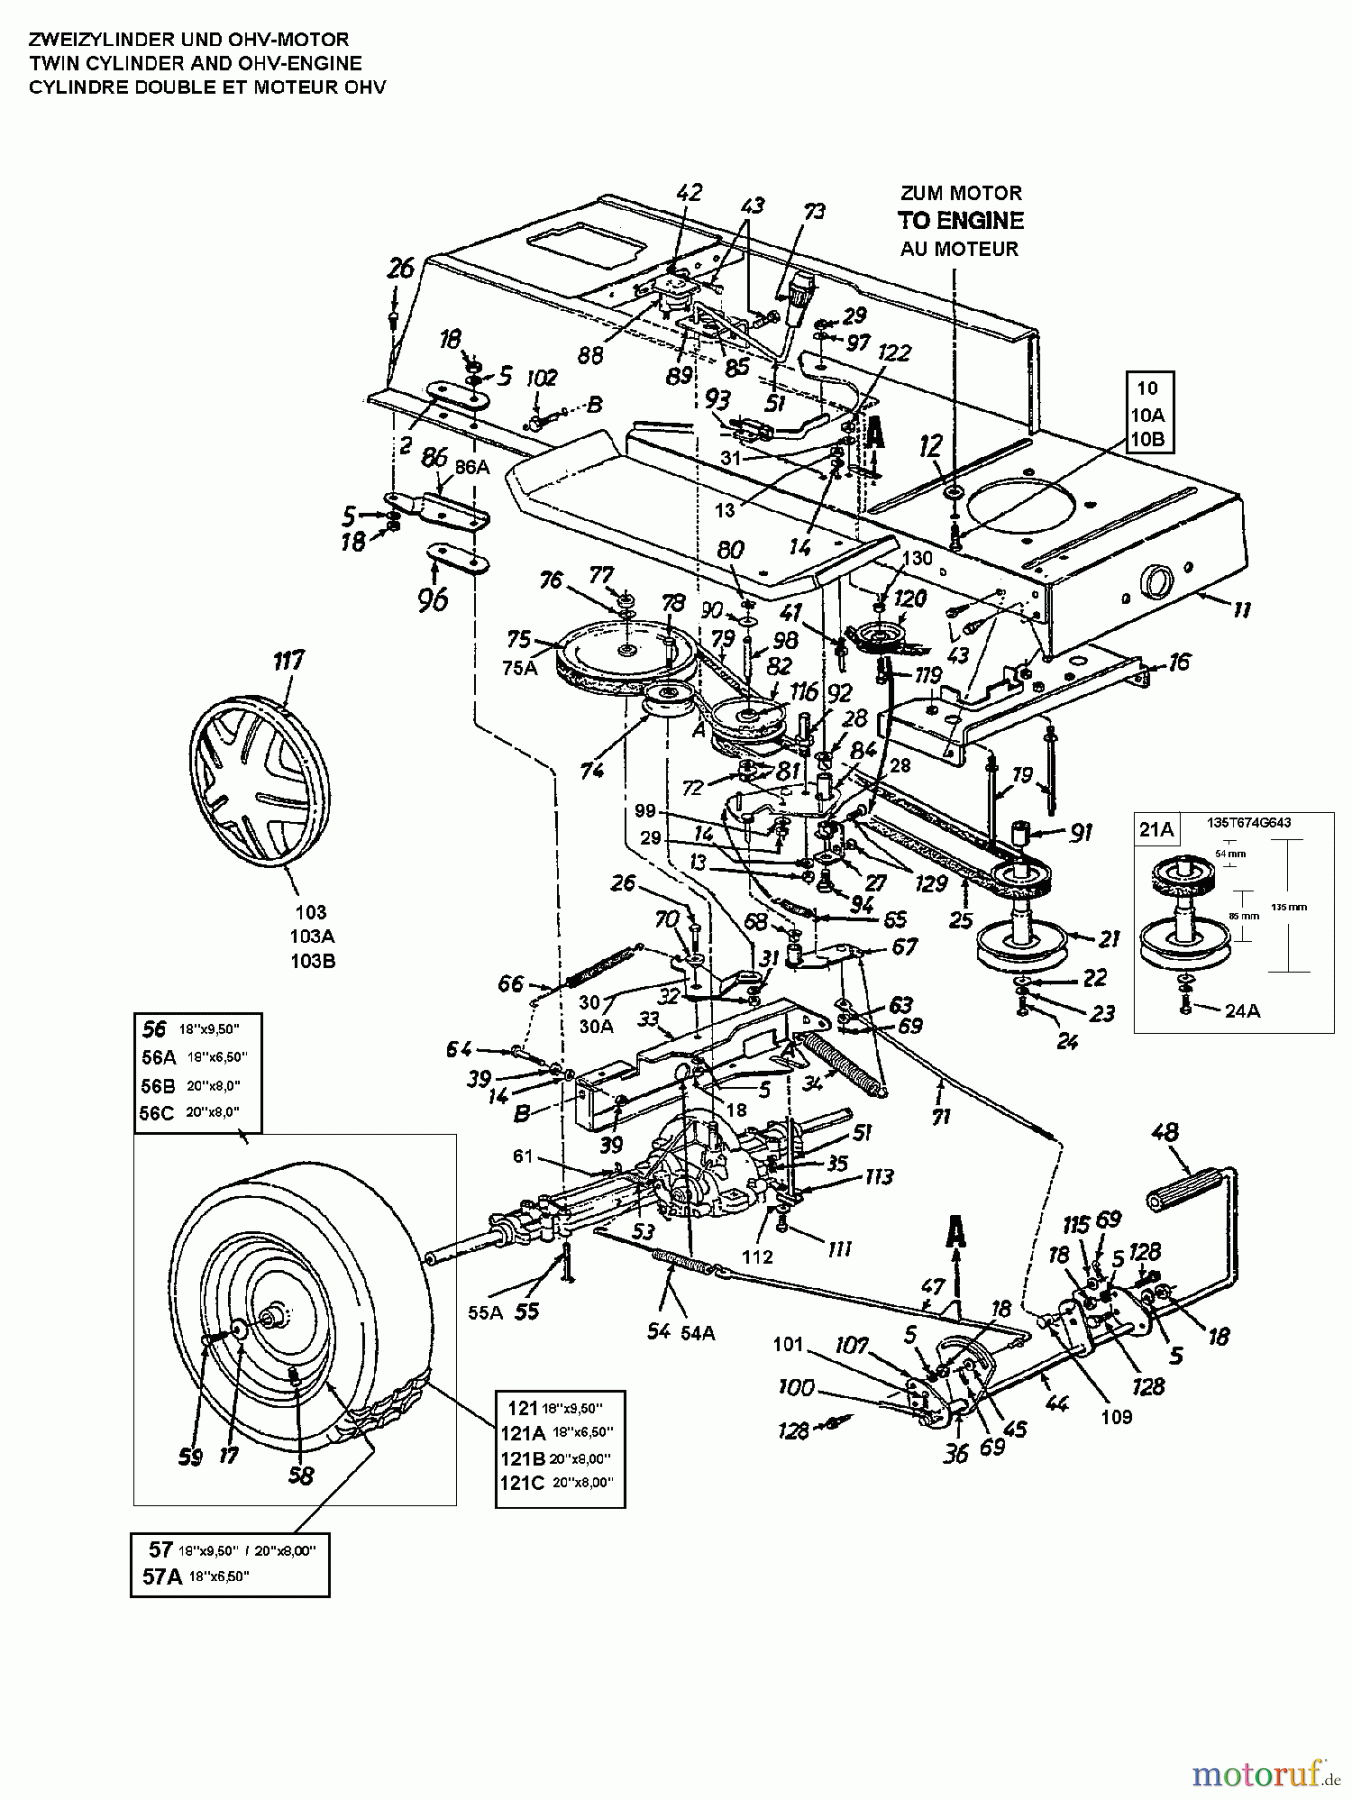  Brill Rasentraktoren (MTD Handelsmarke) Rasentraktoren 76/13 135N677C629  (1995) Fahrantrieb, Motorkeilriemenscheibe, Pedal, Räder hinten